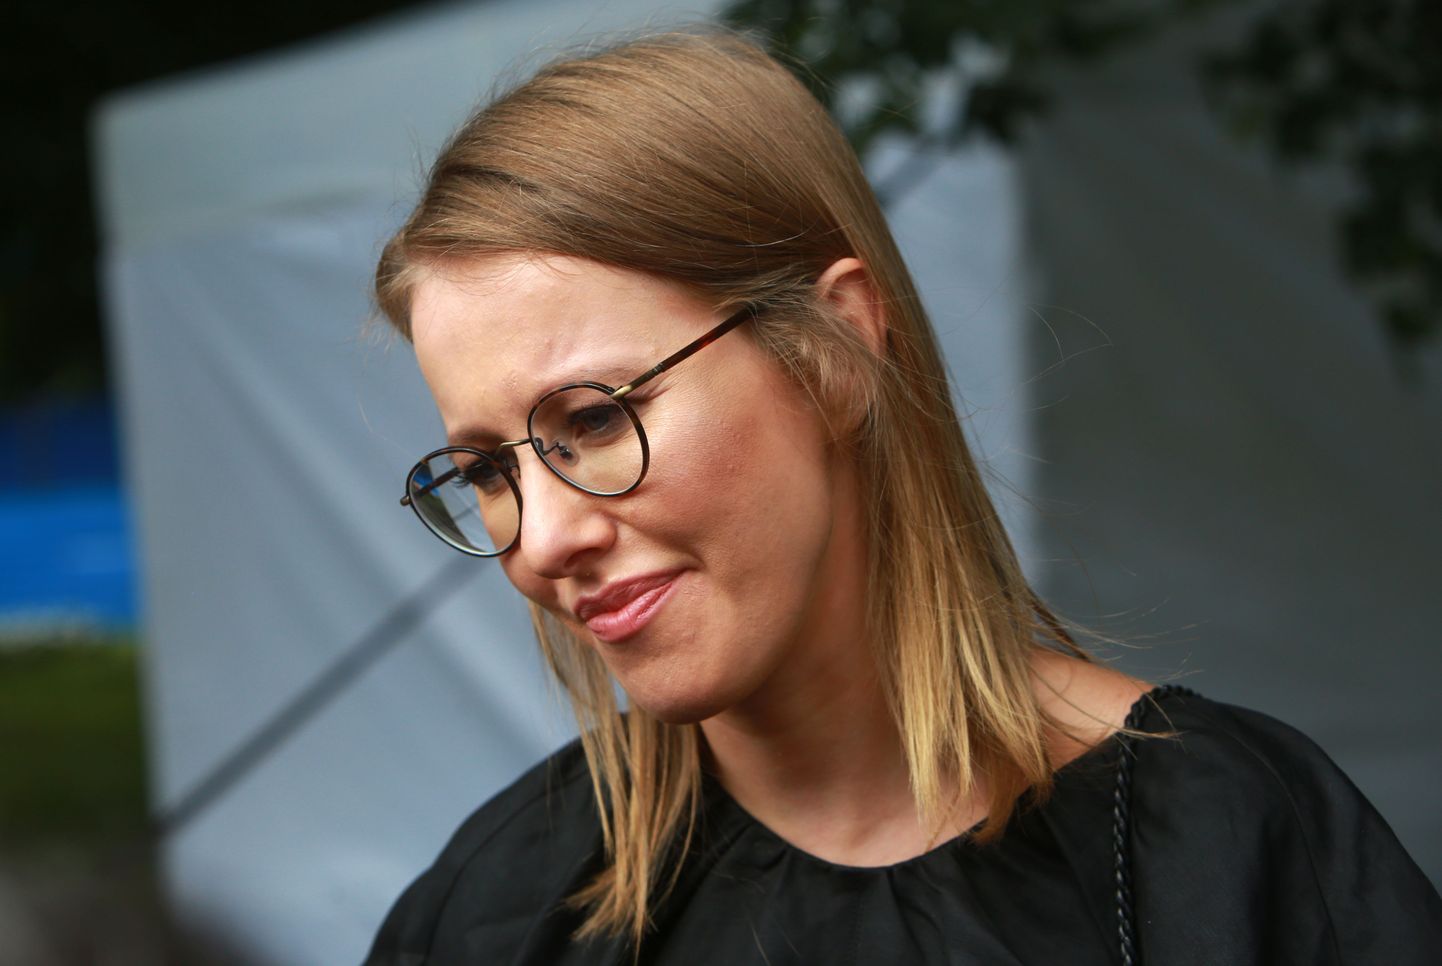 Vene opostisiooniaktivist, telenägu ja Peterburi linnapea tütar Ksenia Sobtšak.